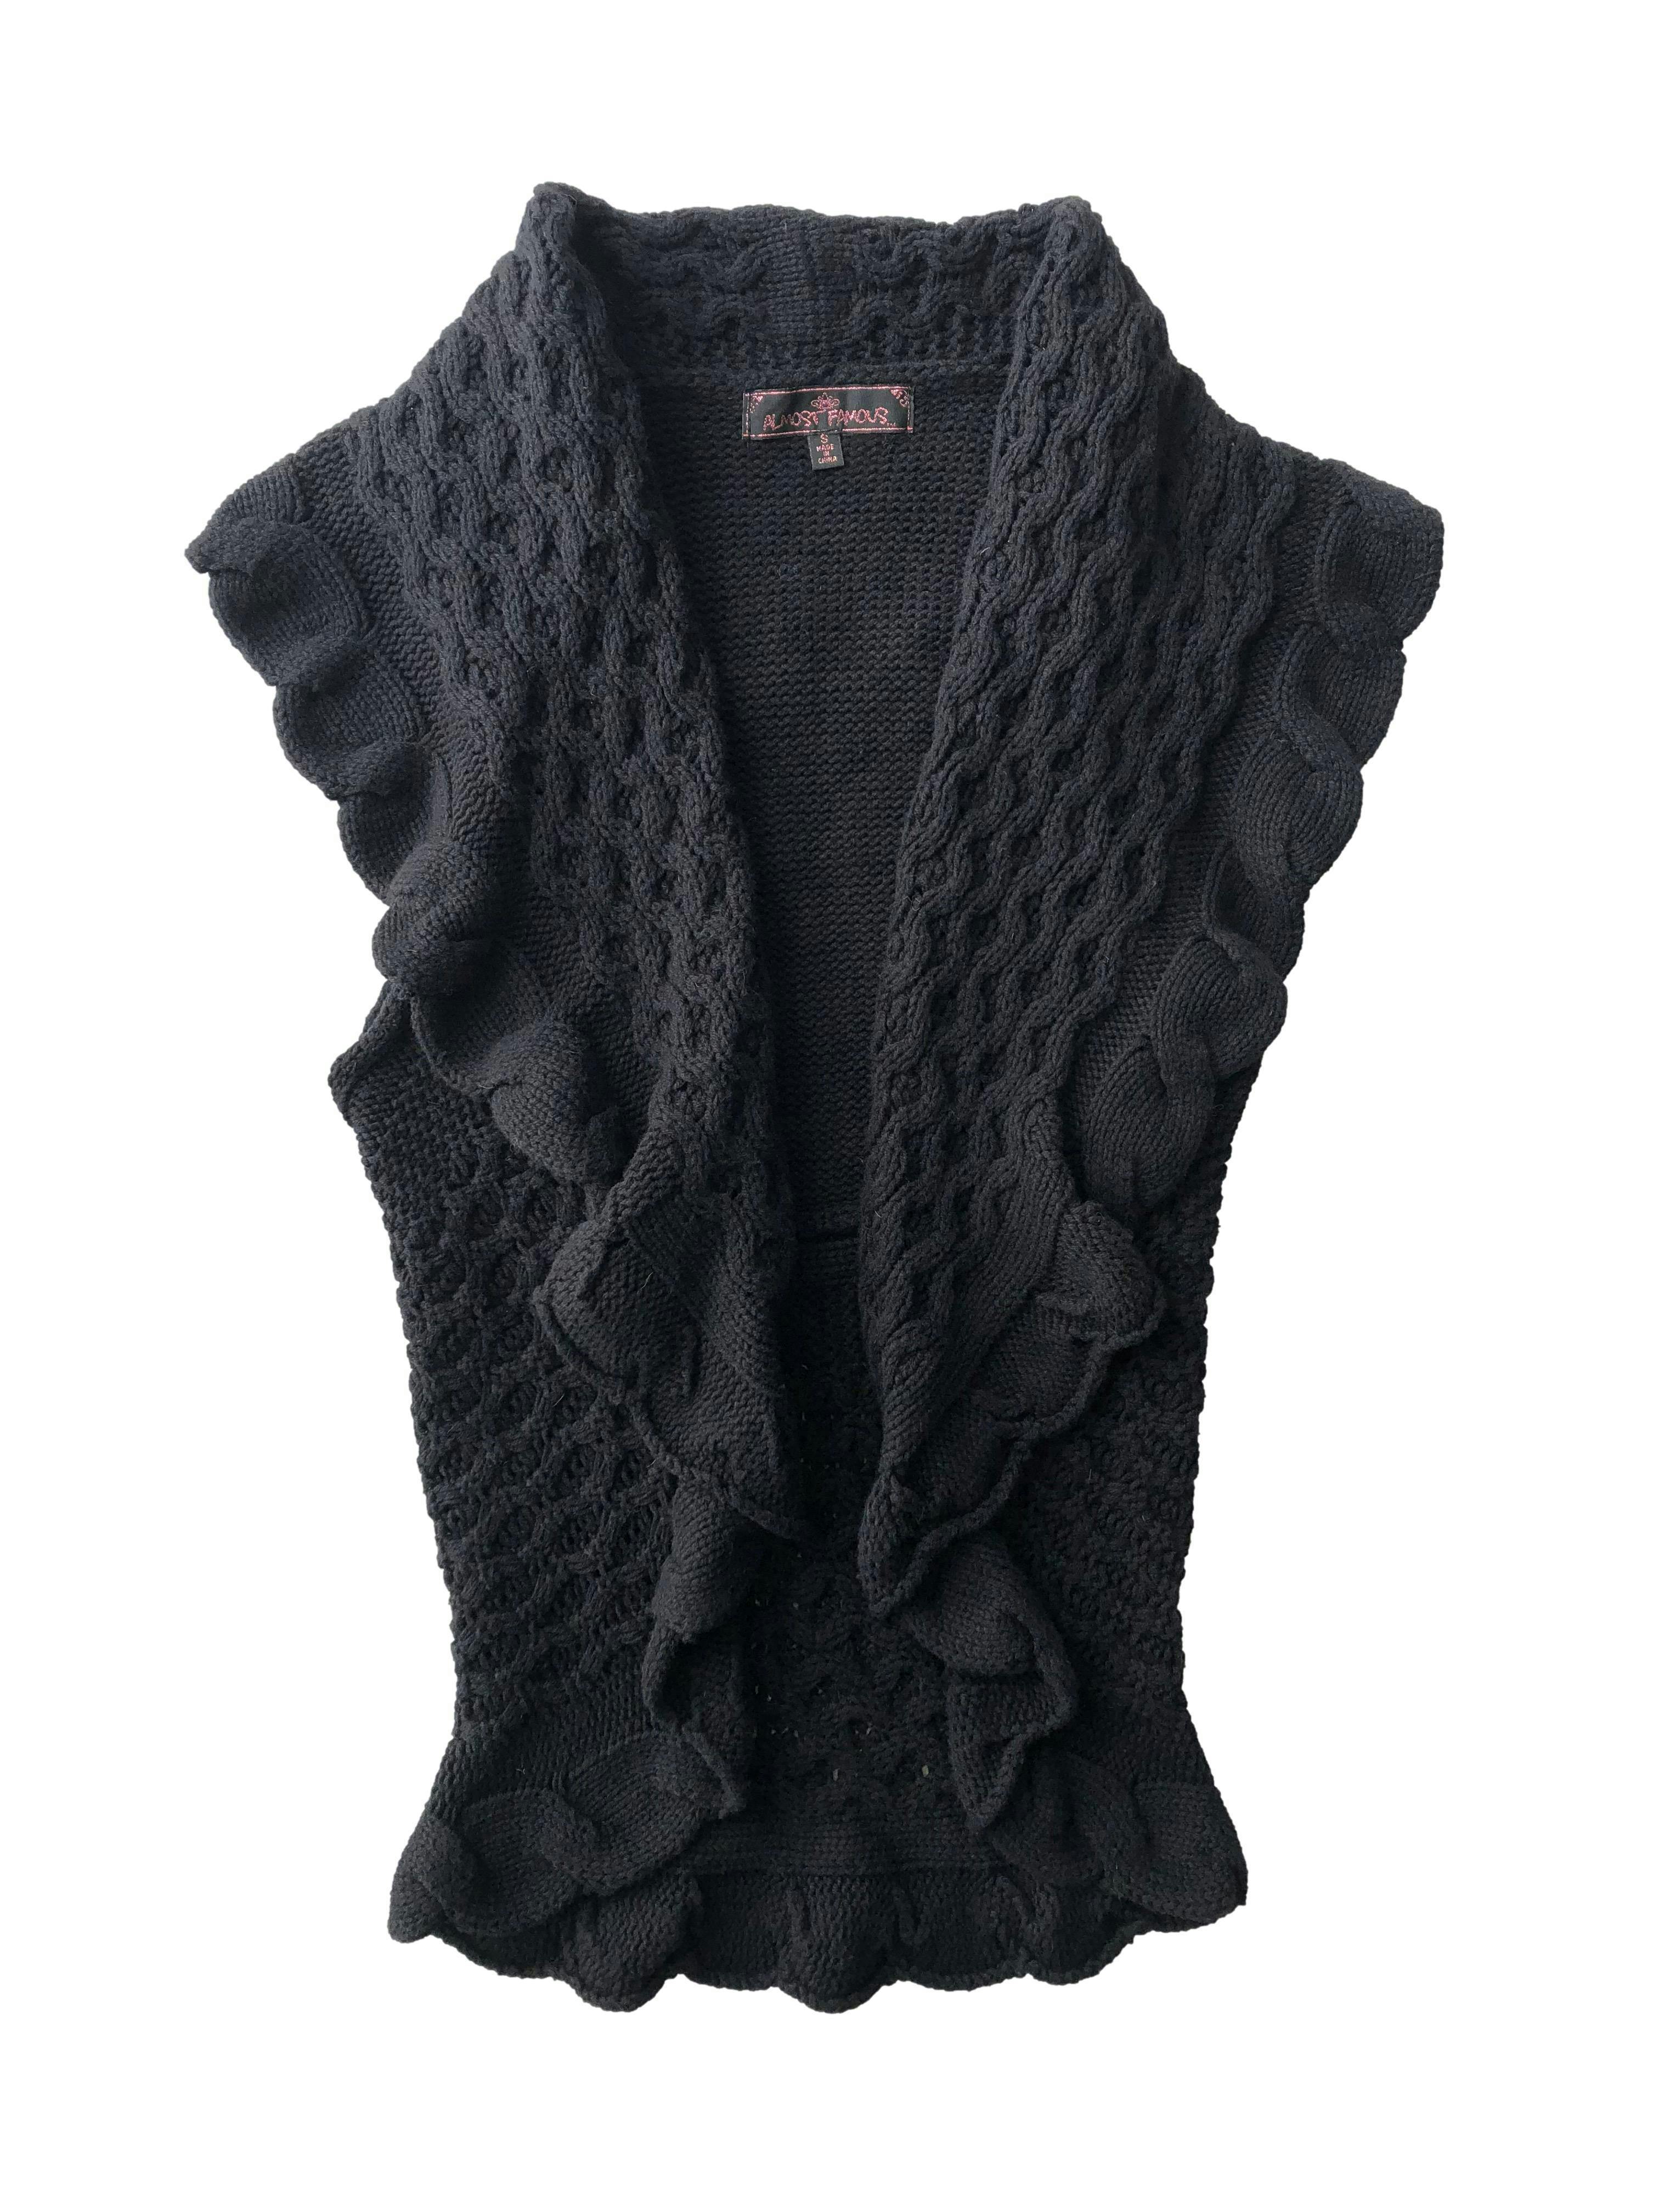 Chaleco negro abierto de corte circular, tejido calado 55% algodón. Busto 80cm, Largo 64cm.